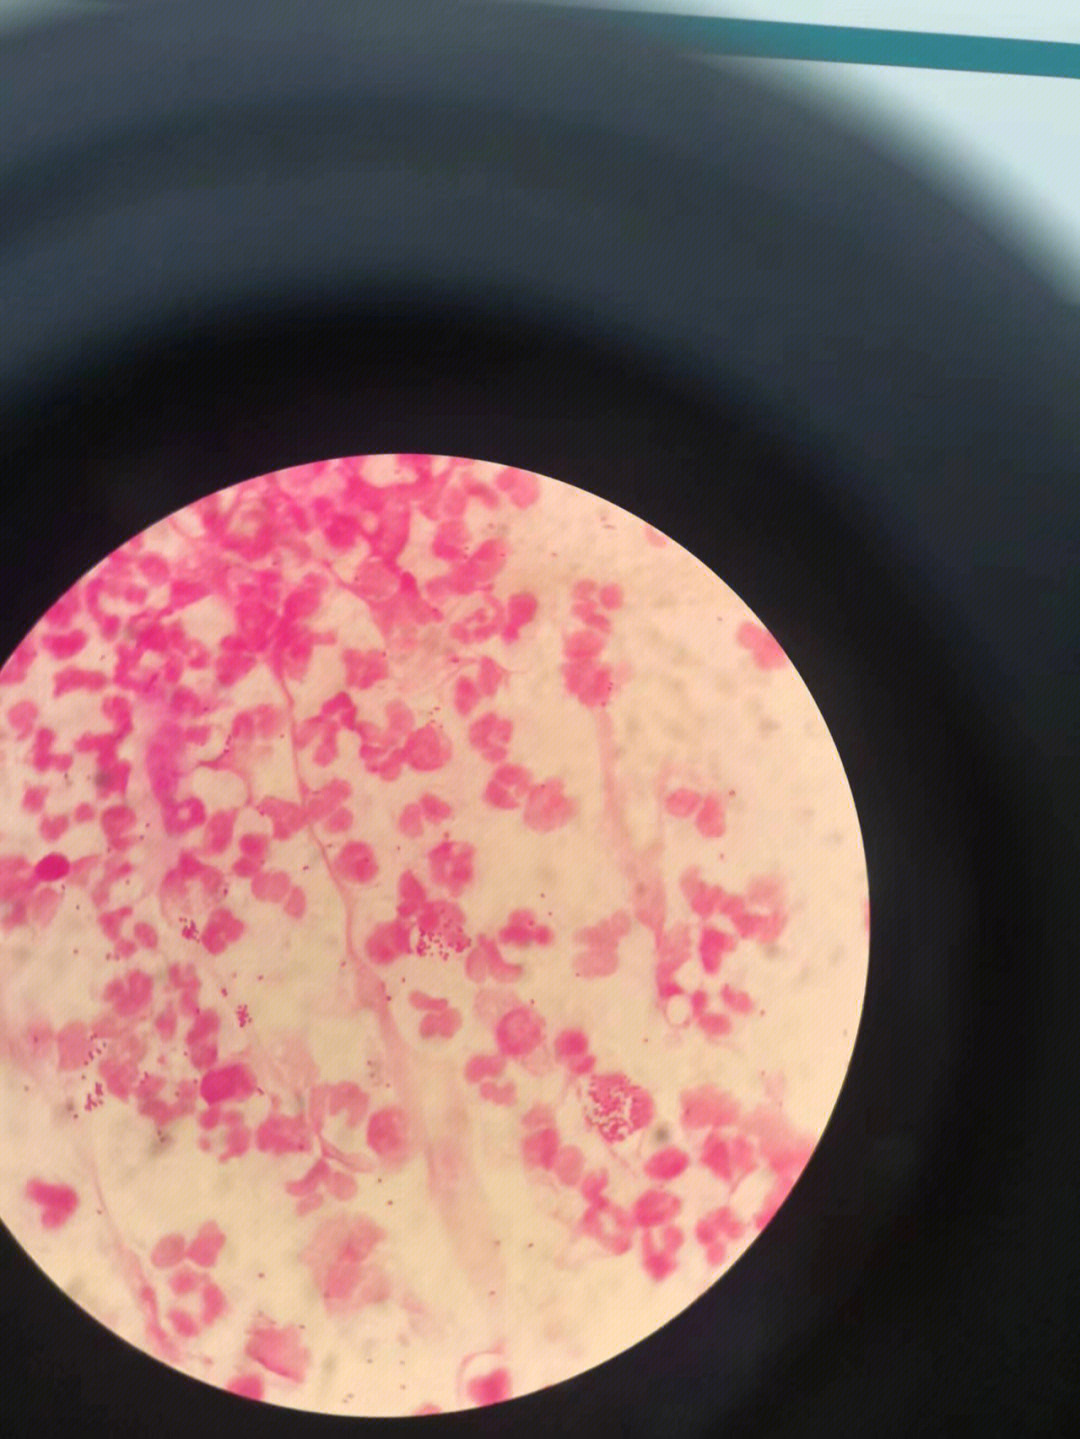 淋病奈瑟菌菌落形态图片